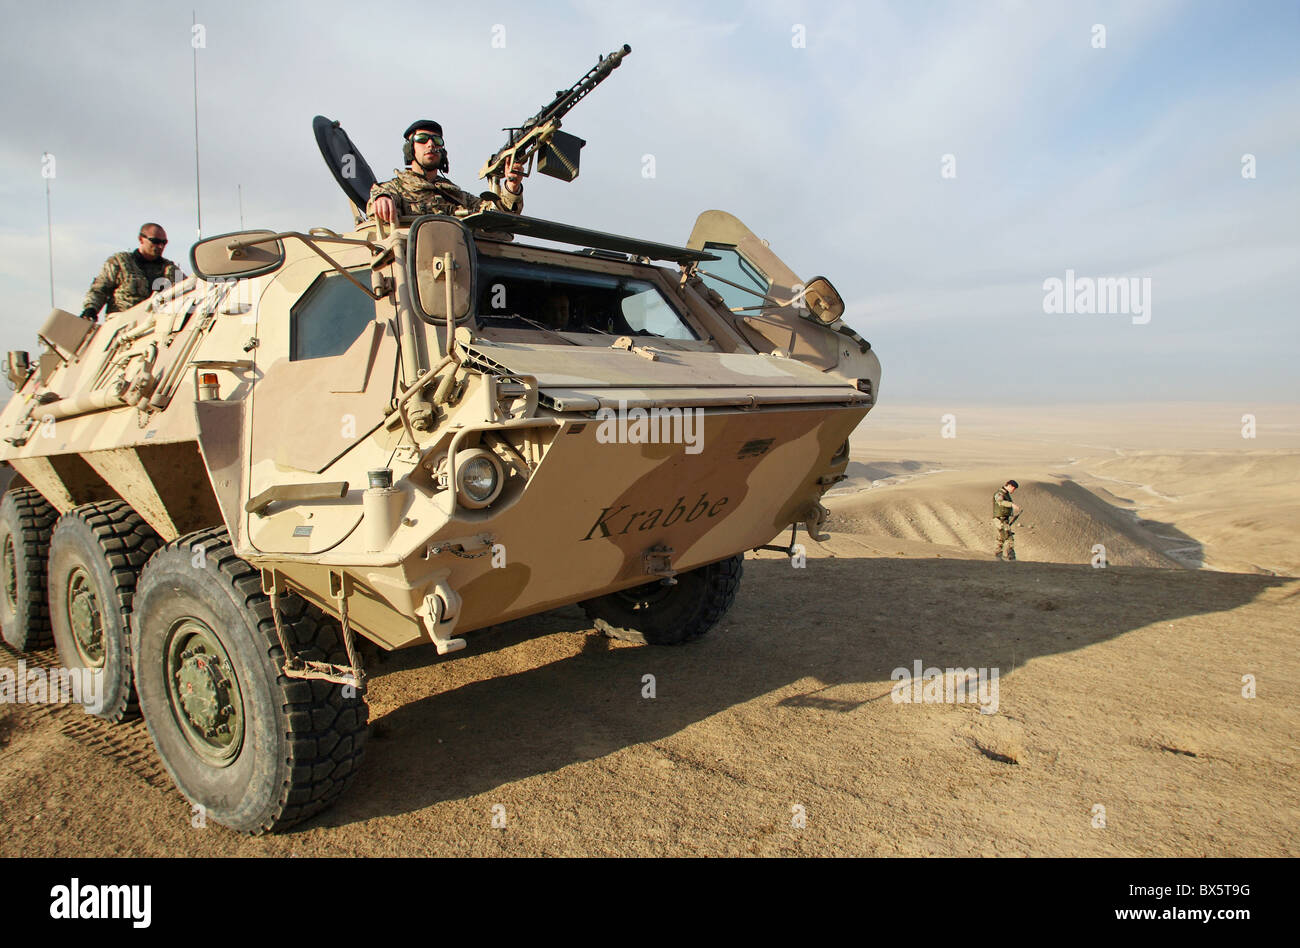 Soldat de l'ISAF dans une berline d'un réservoir de Fox, Mazar-e Sharif, Afghanistan Banque D'Images